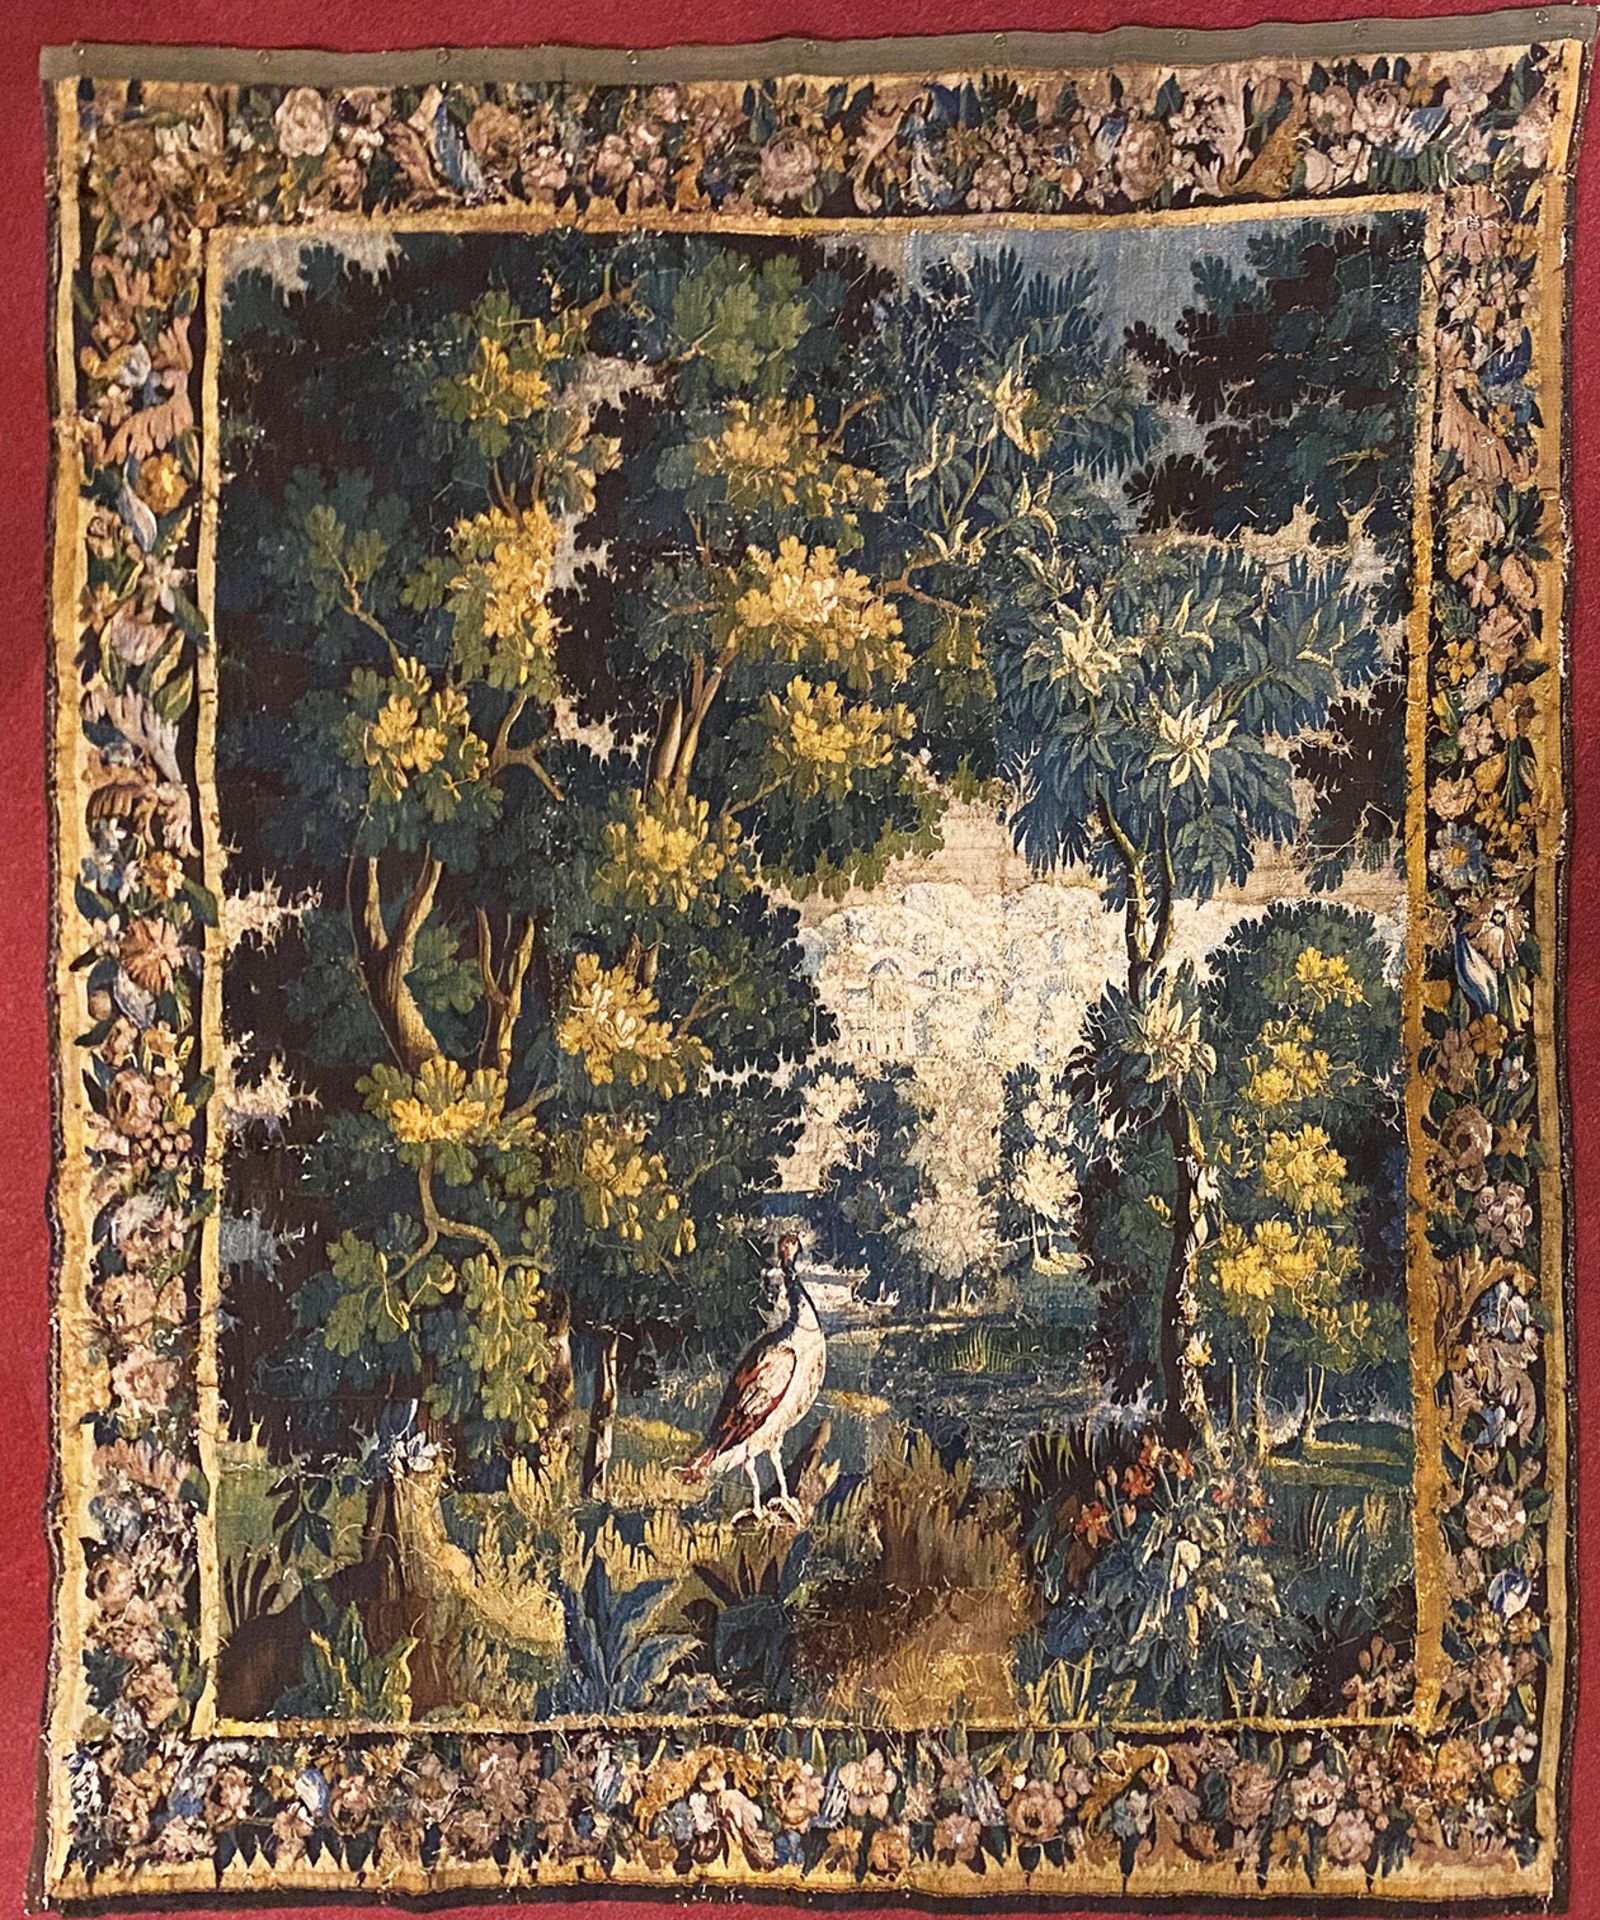 Wirkteppich, Tapisserie, Flandern, 18. Jh., Vogel im Wald, mittig der Blick frei in die Ferne, - Image 7 of 7